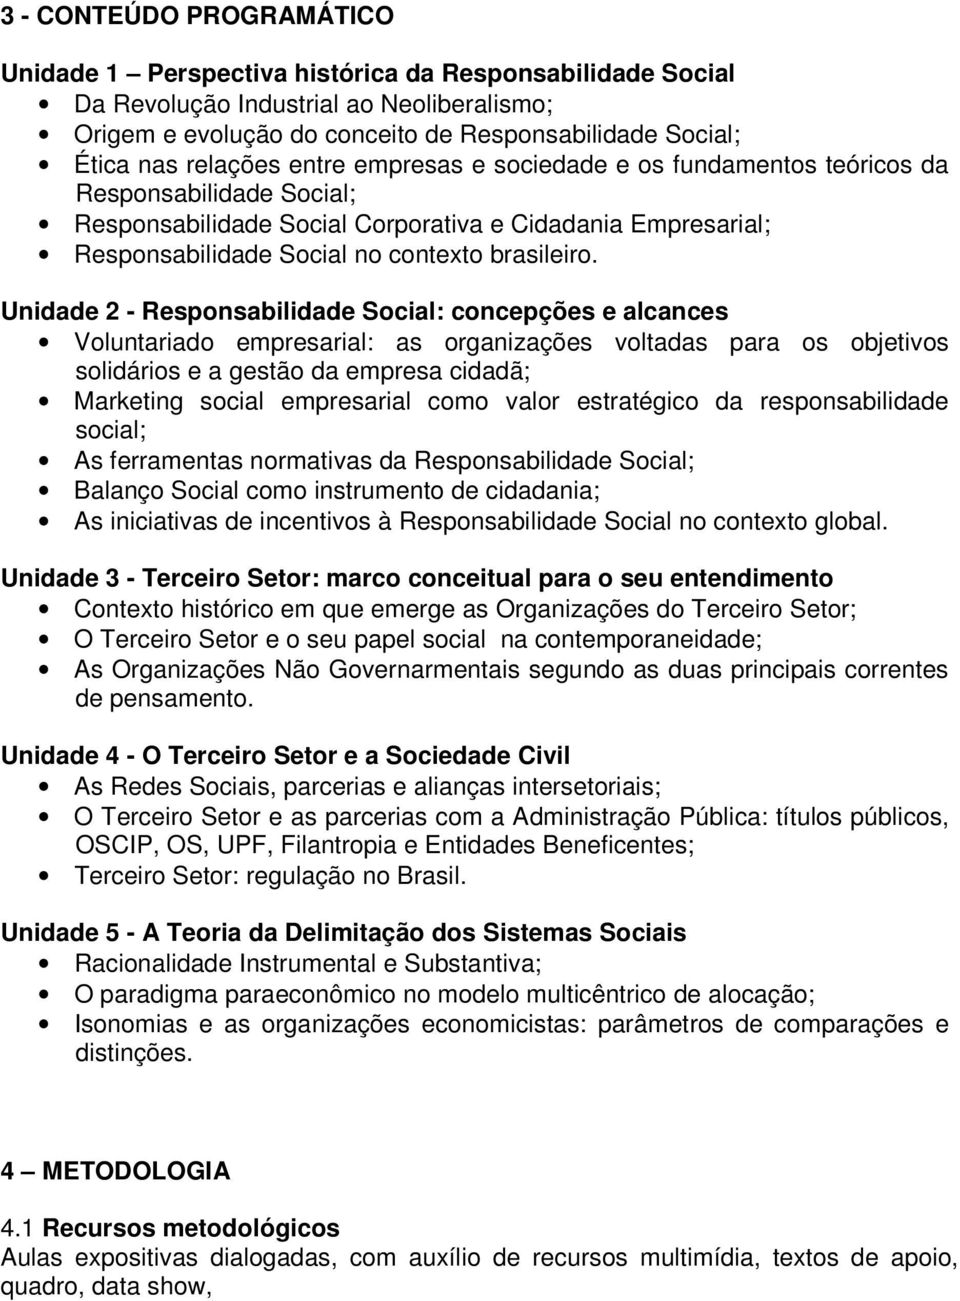 Unidade 2 - Responsabilidade Social: concepções e alcances Voluntariado empresarial: as organizações voltadas para os objetivos solidários e a gestão da empresa cidadã; Marketing social empresarial